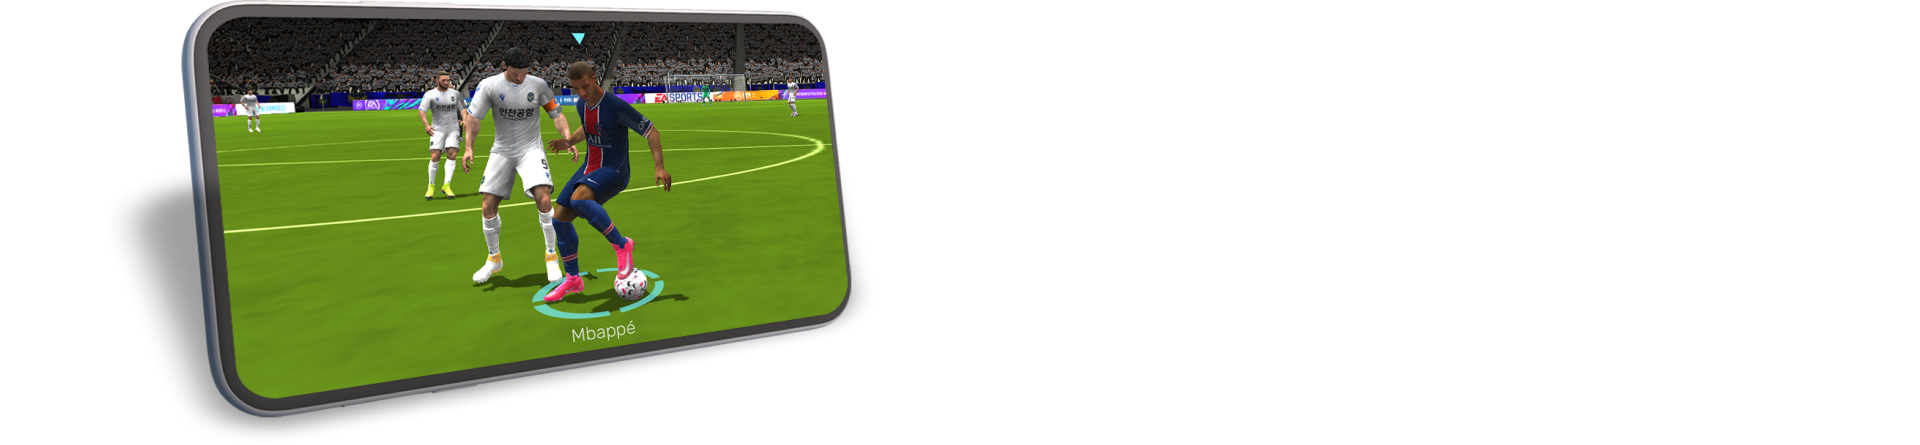 fifa mobile soccer online